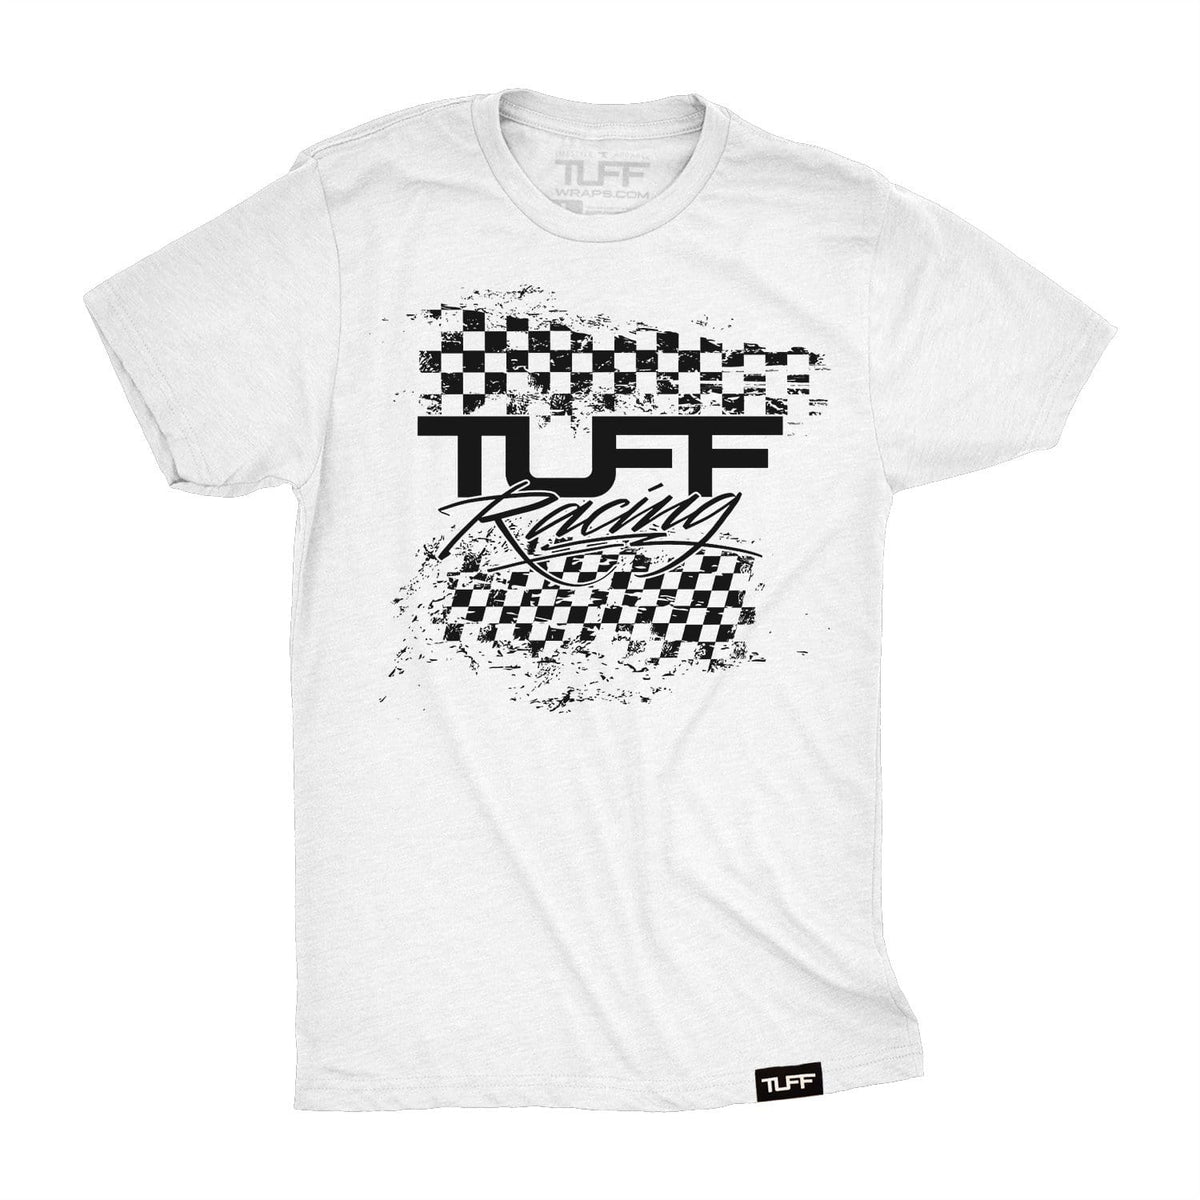 TUFF Racing Tee S / White TuffWraps.com